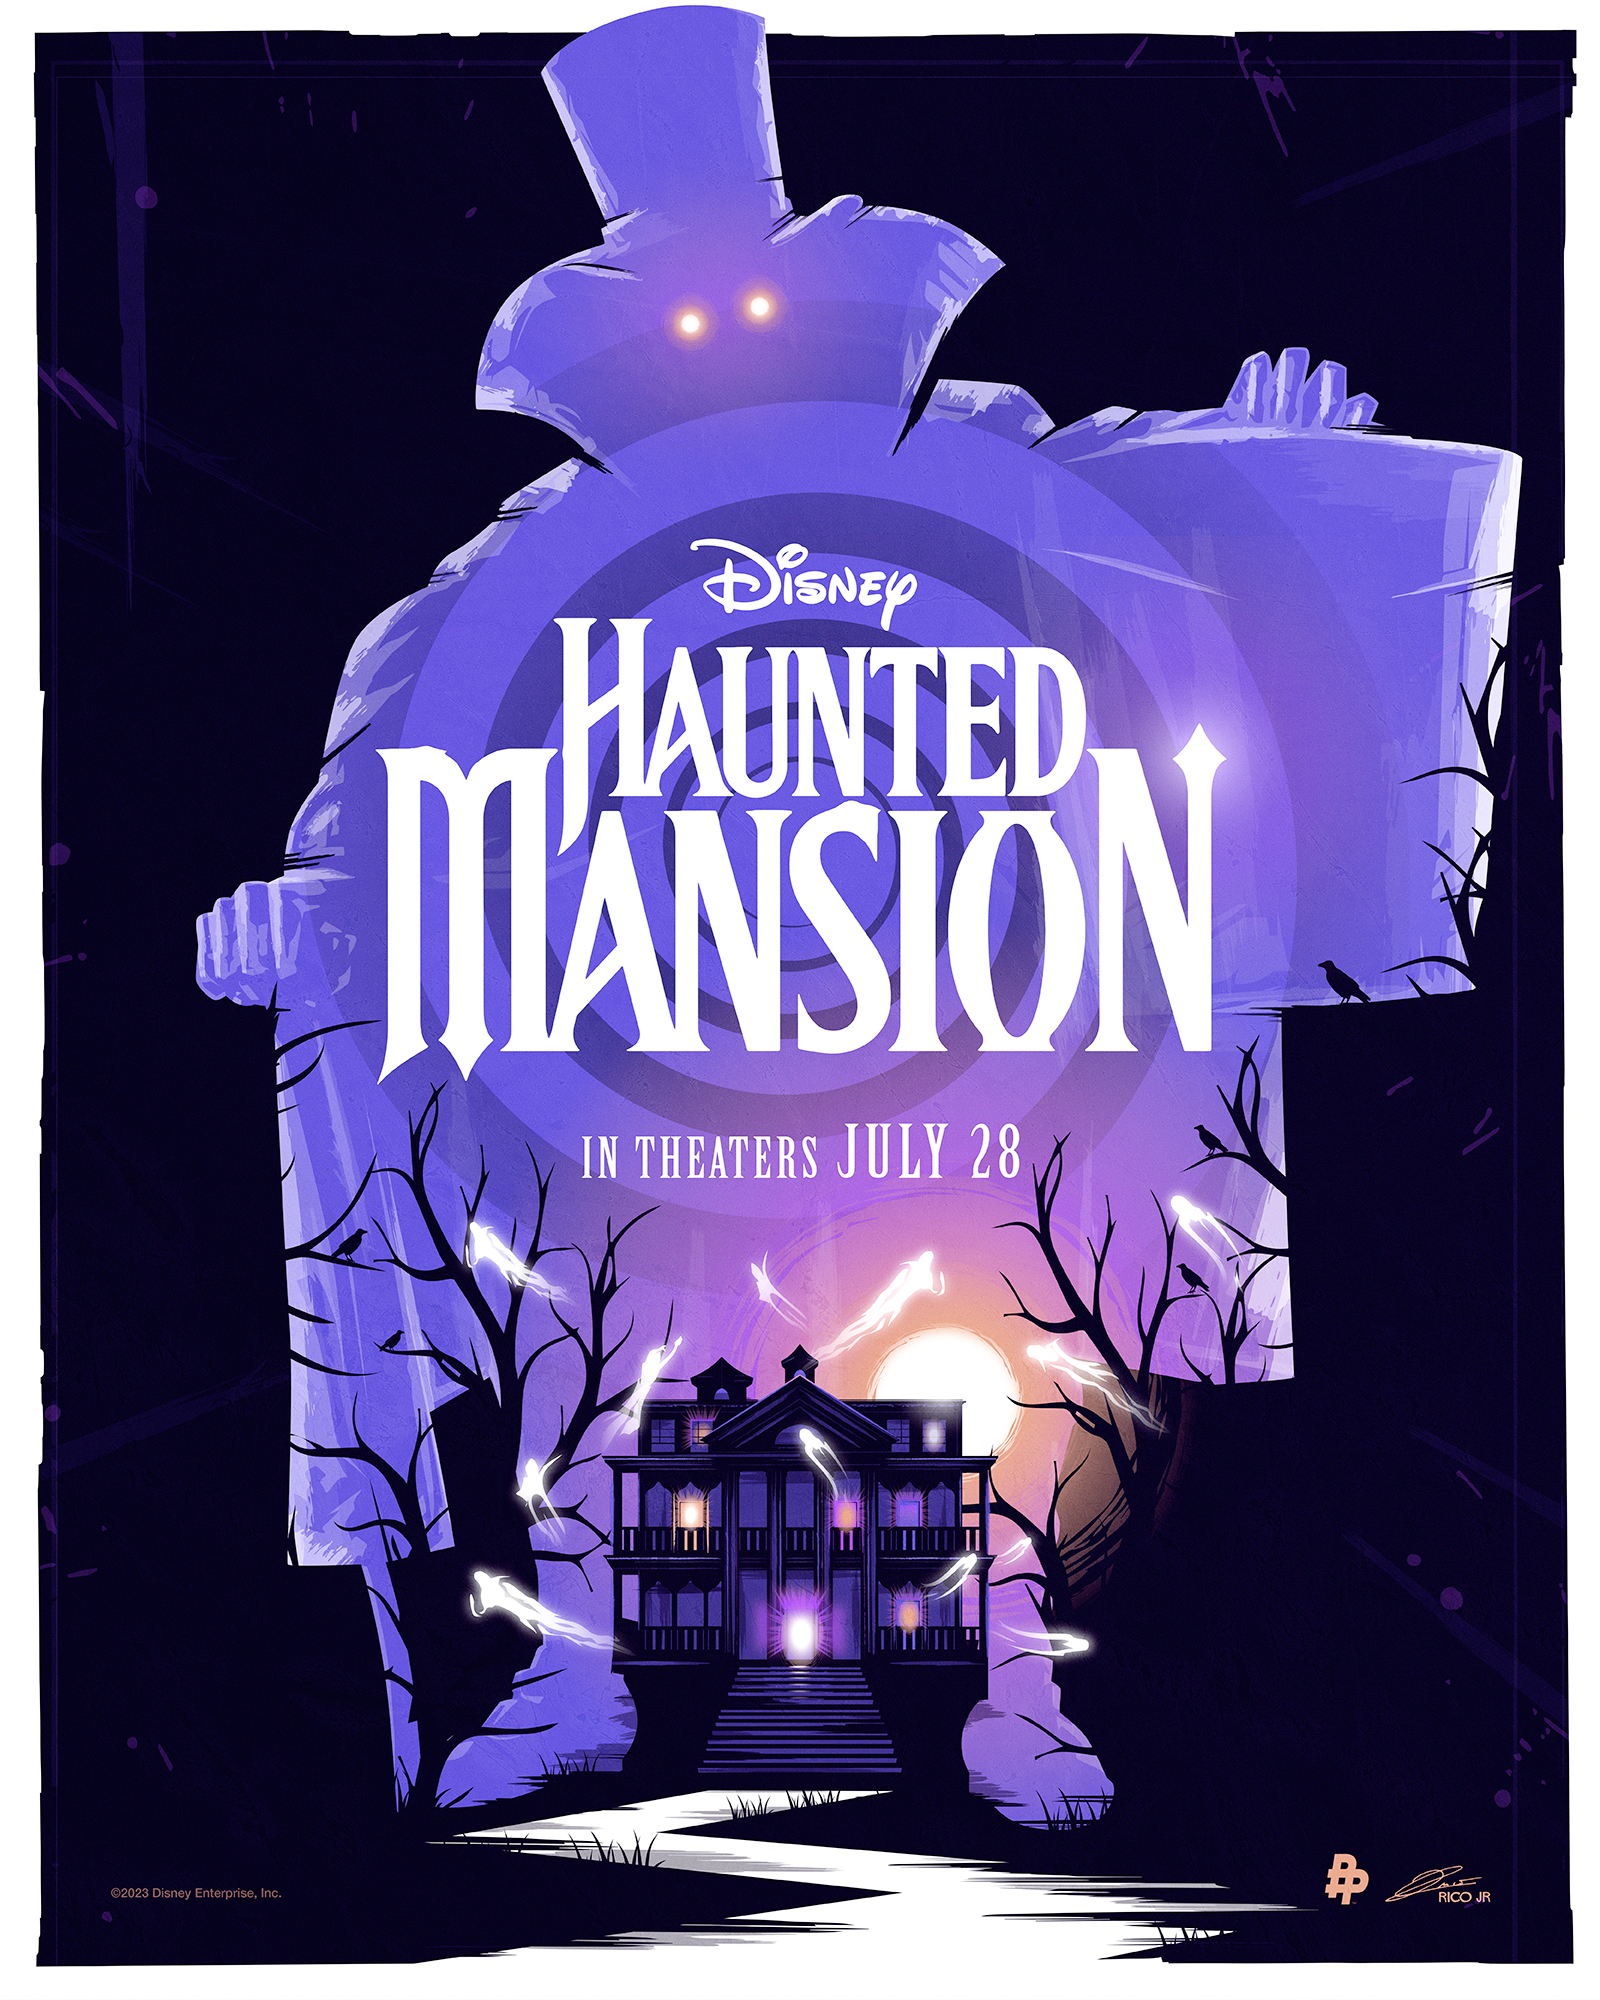 Artwork by Haunted Mansion – Walt Disney Studios – Digital Marketing